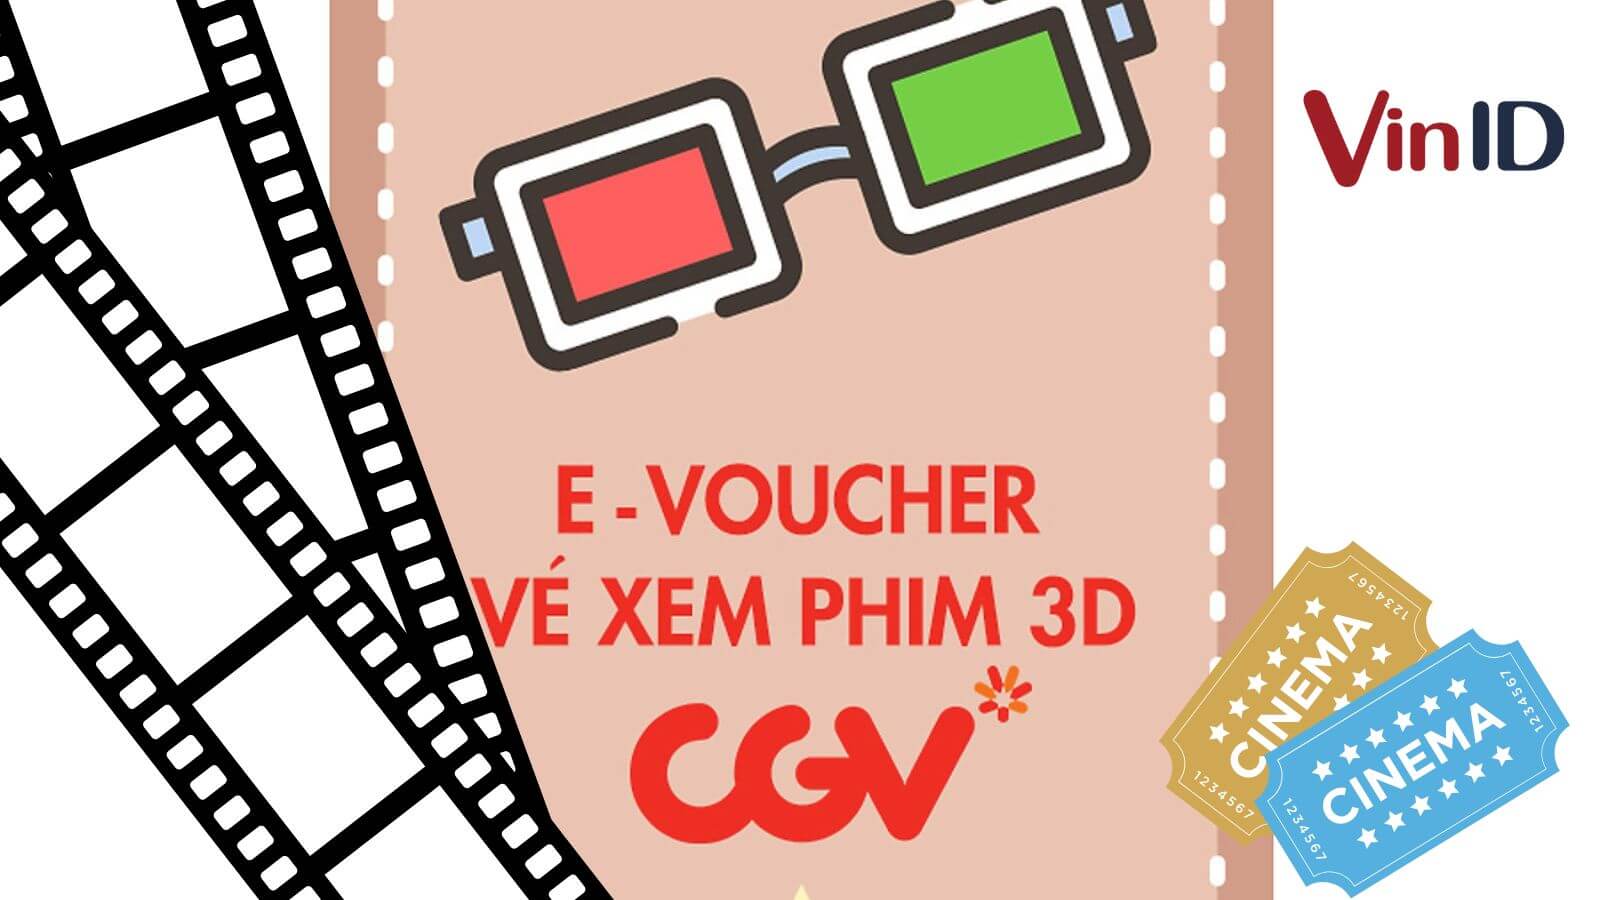 Đặt vé CGV online  Đăng ký thành viên CGV nhanh chóng